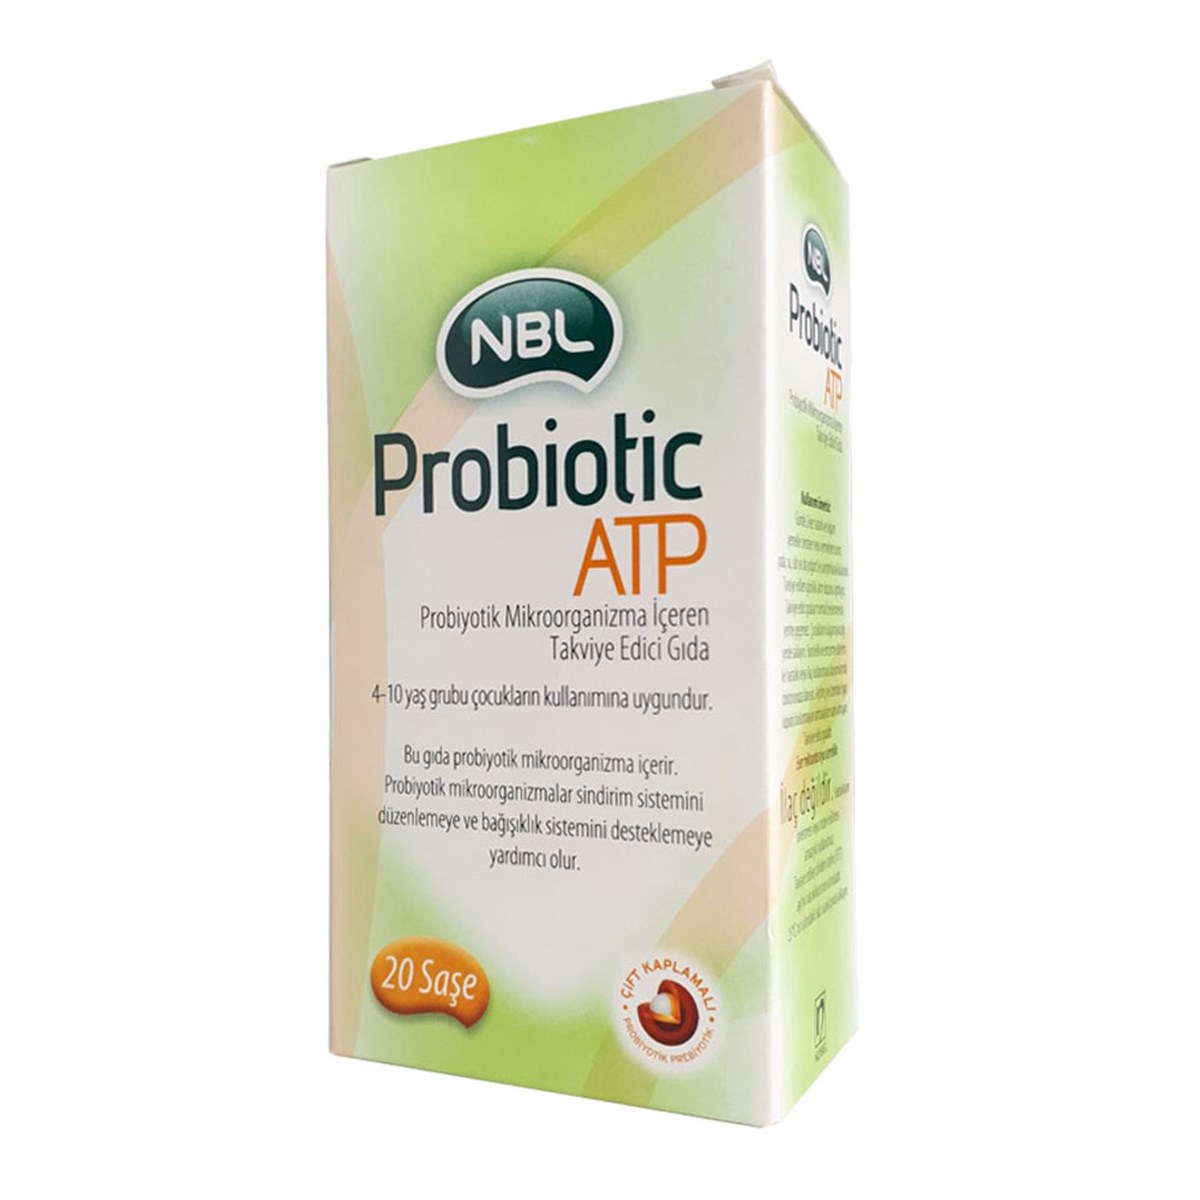 NBL Probiotic ATP 20 Saşe | Fiyatı 90 TL | Vitamin Dolabı